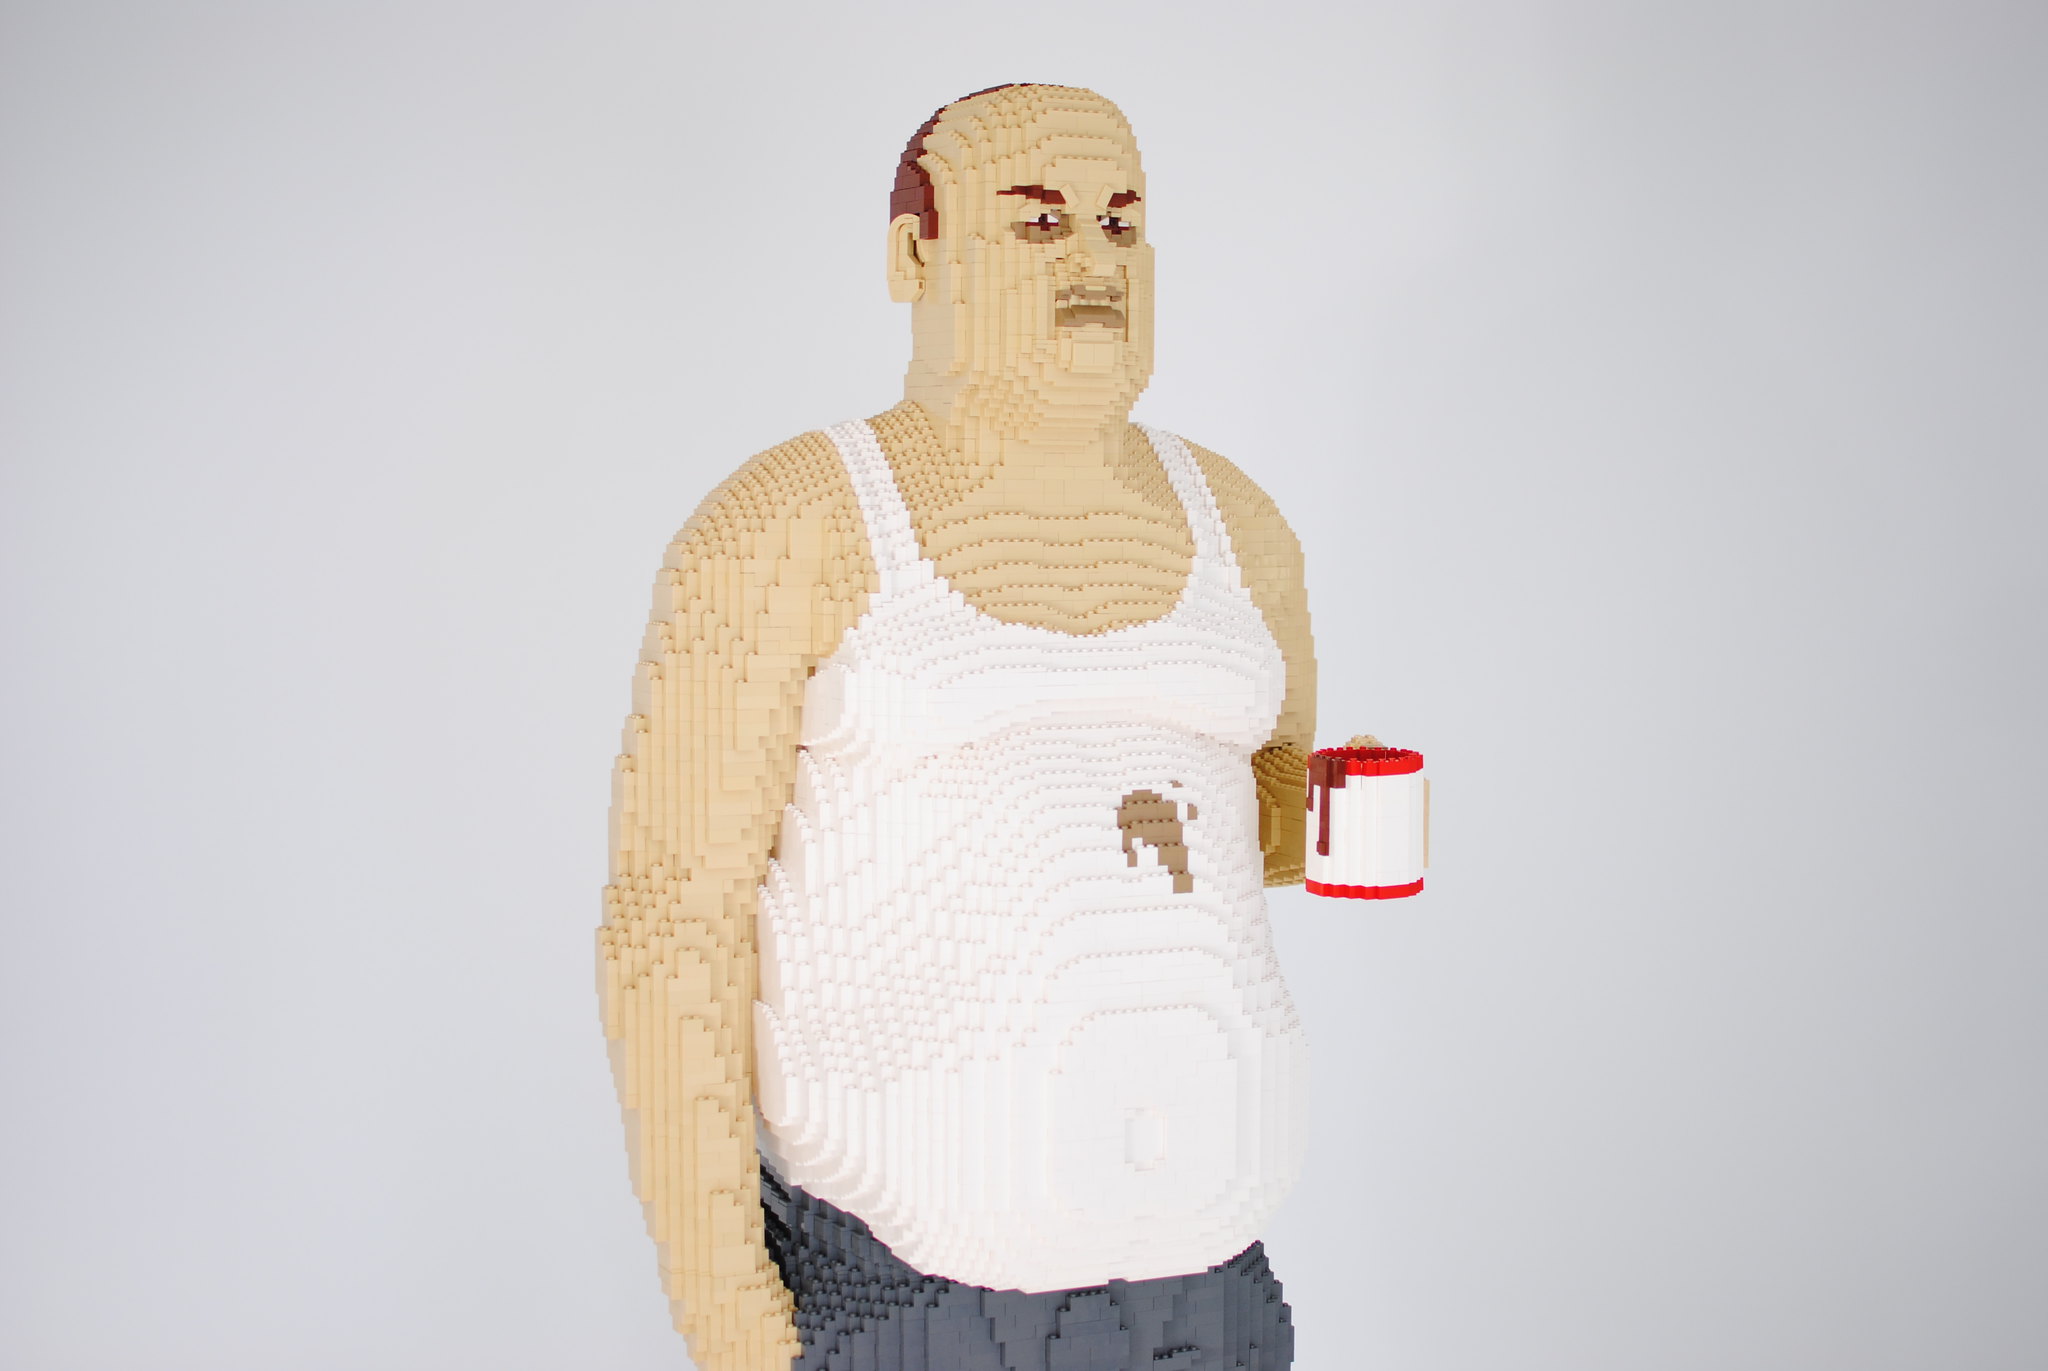 Coffee Drinker